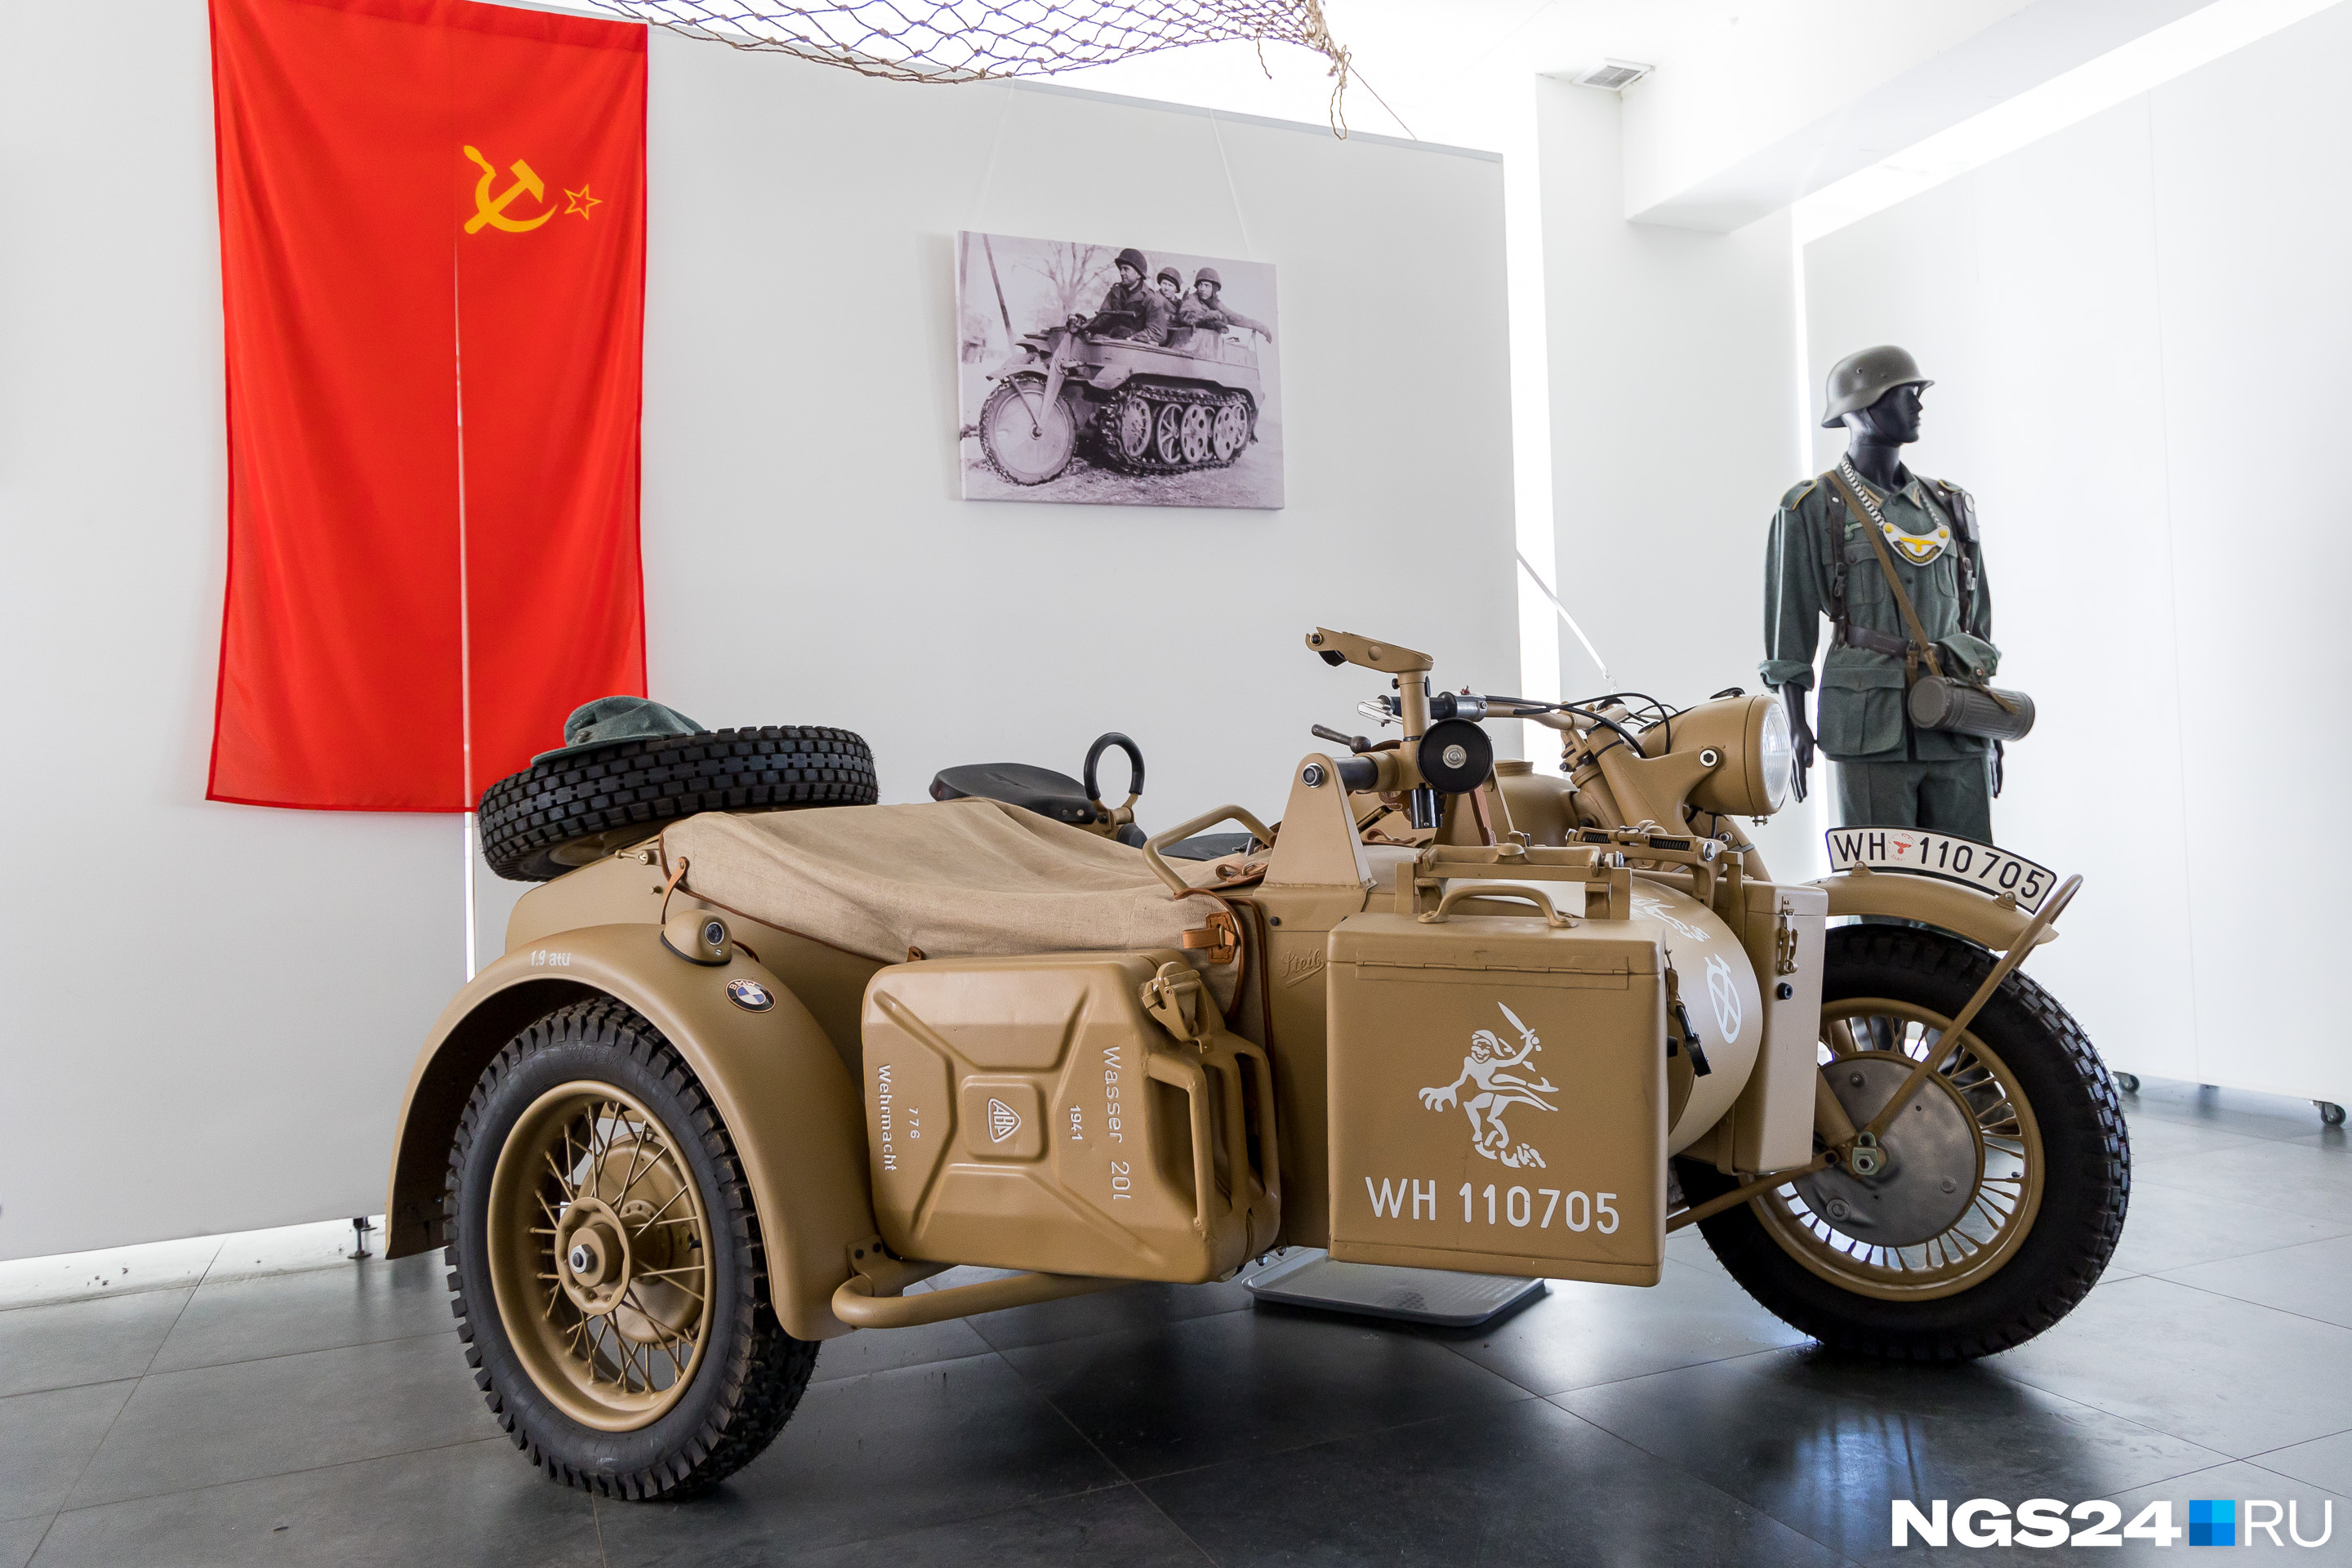 Немецкие солдаты творчески подходили к тактическим знакам. Этот мотоцикл входил в состав дивизии «Призрак»